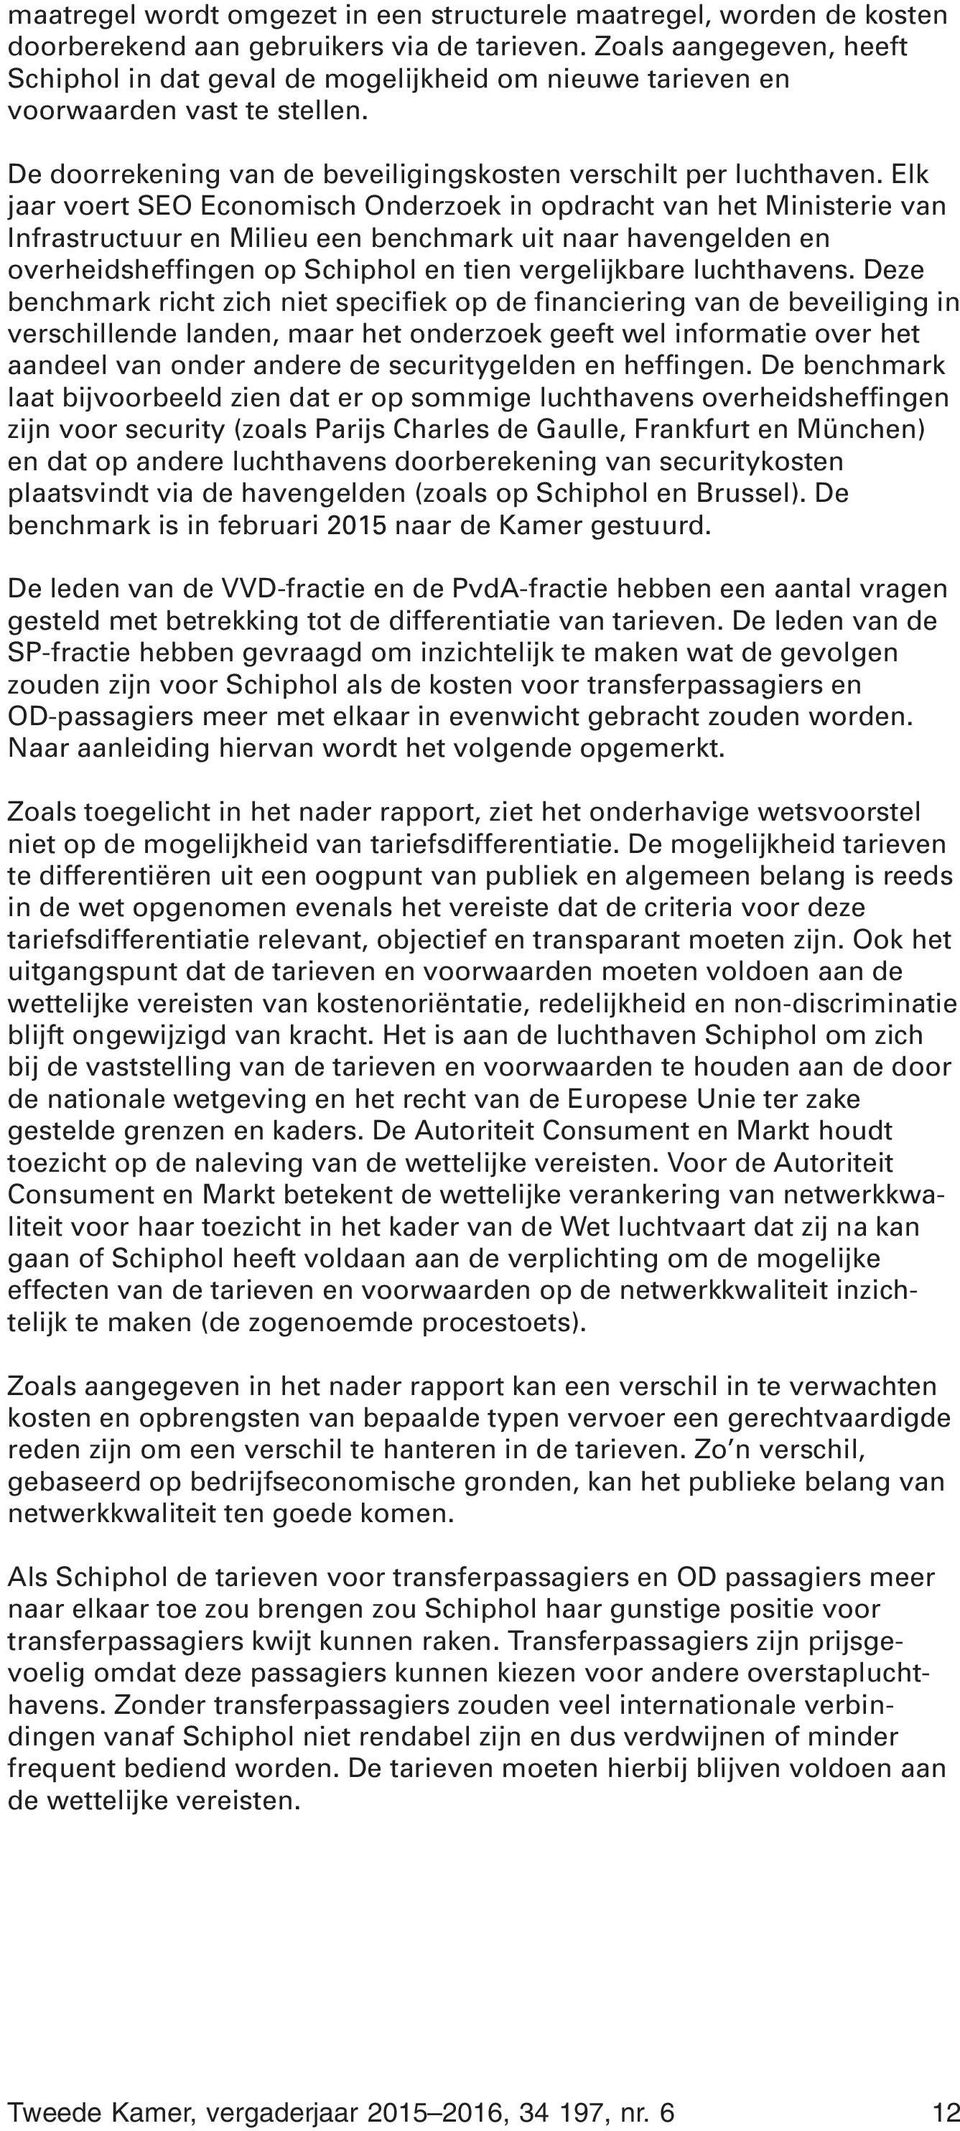 Elk jaar voert SEO Economisch Onderzoek in opdracht van het Ministerie van Infrastructuur en Milieu een benchmark uit naar havengelden en overheidsheffingen op Schiphol en tien vergelijkbare